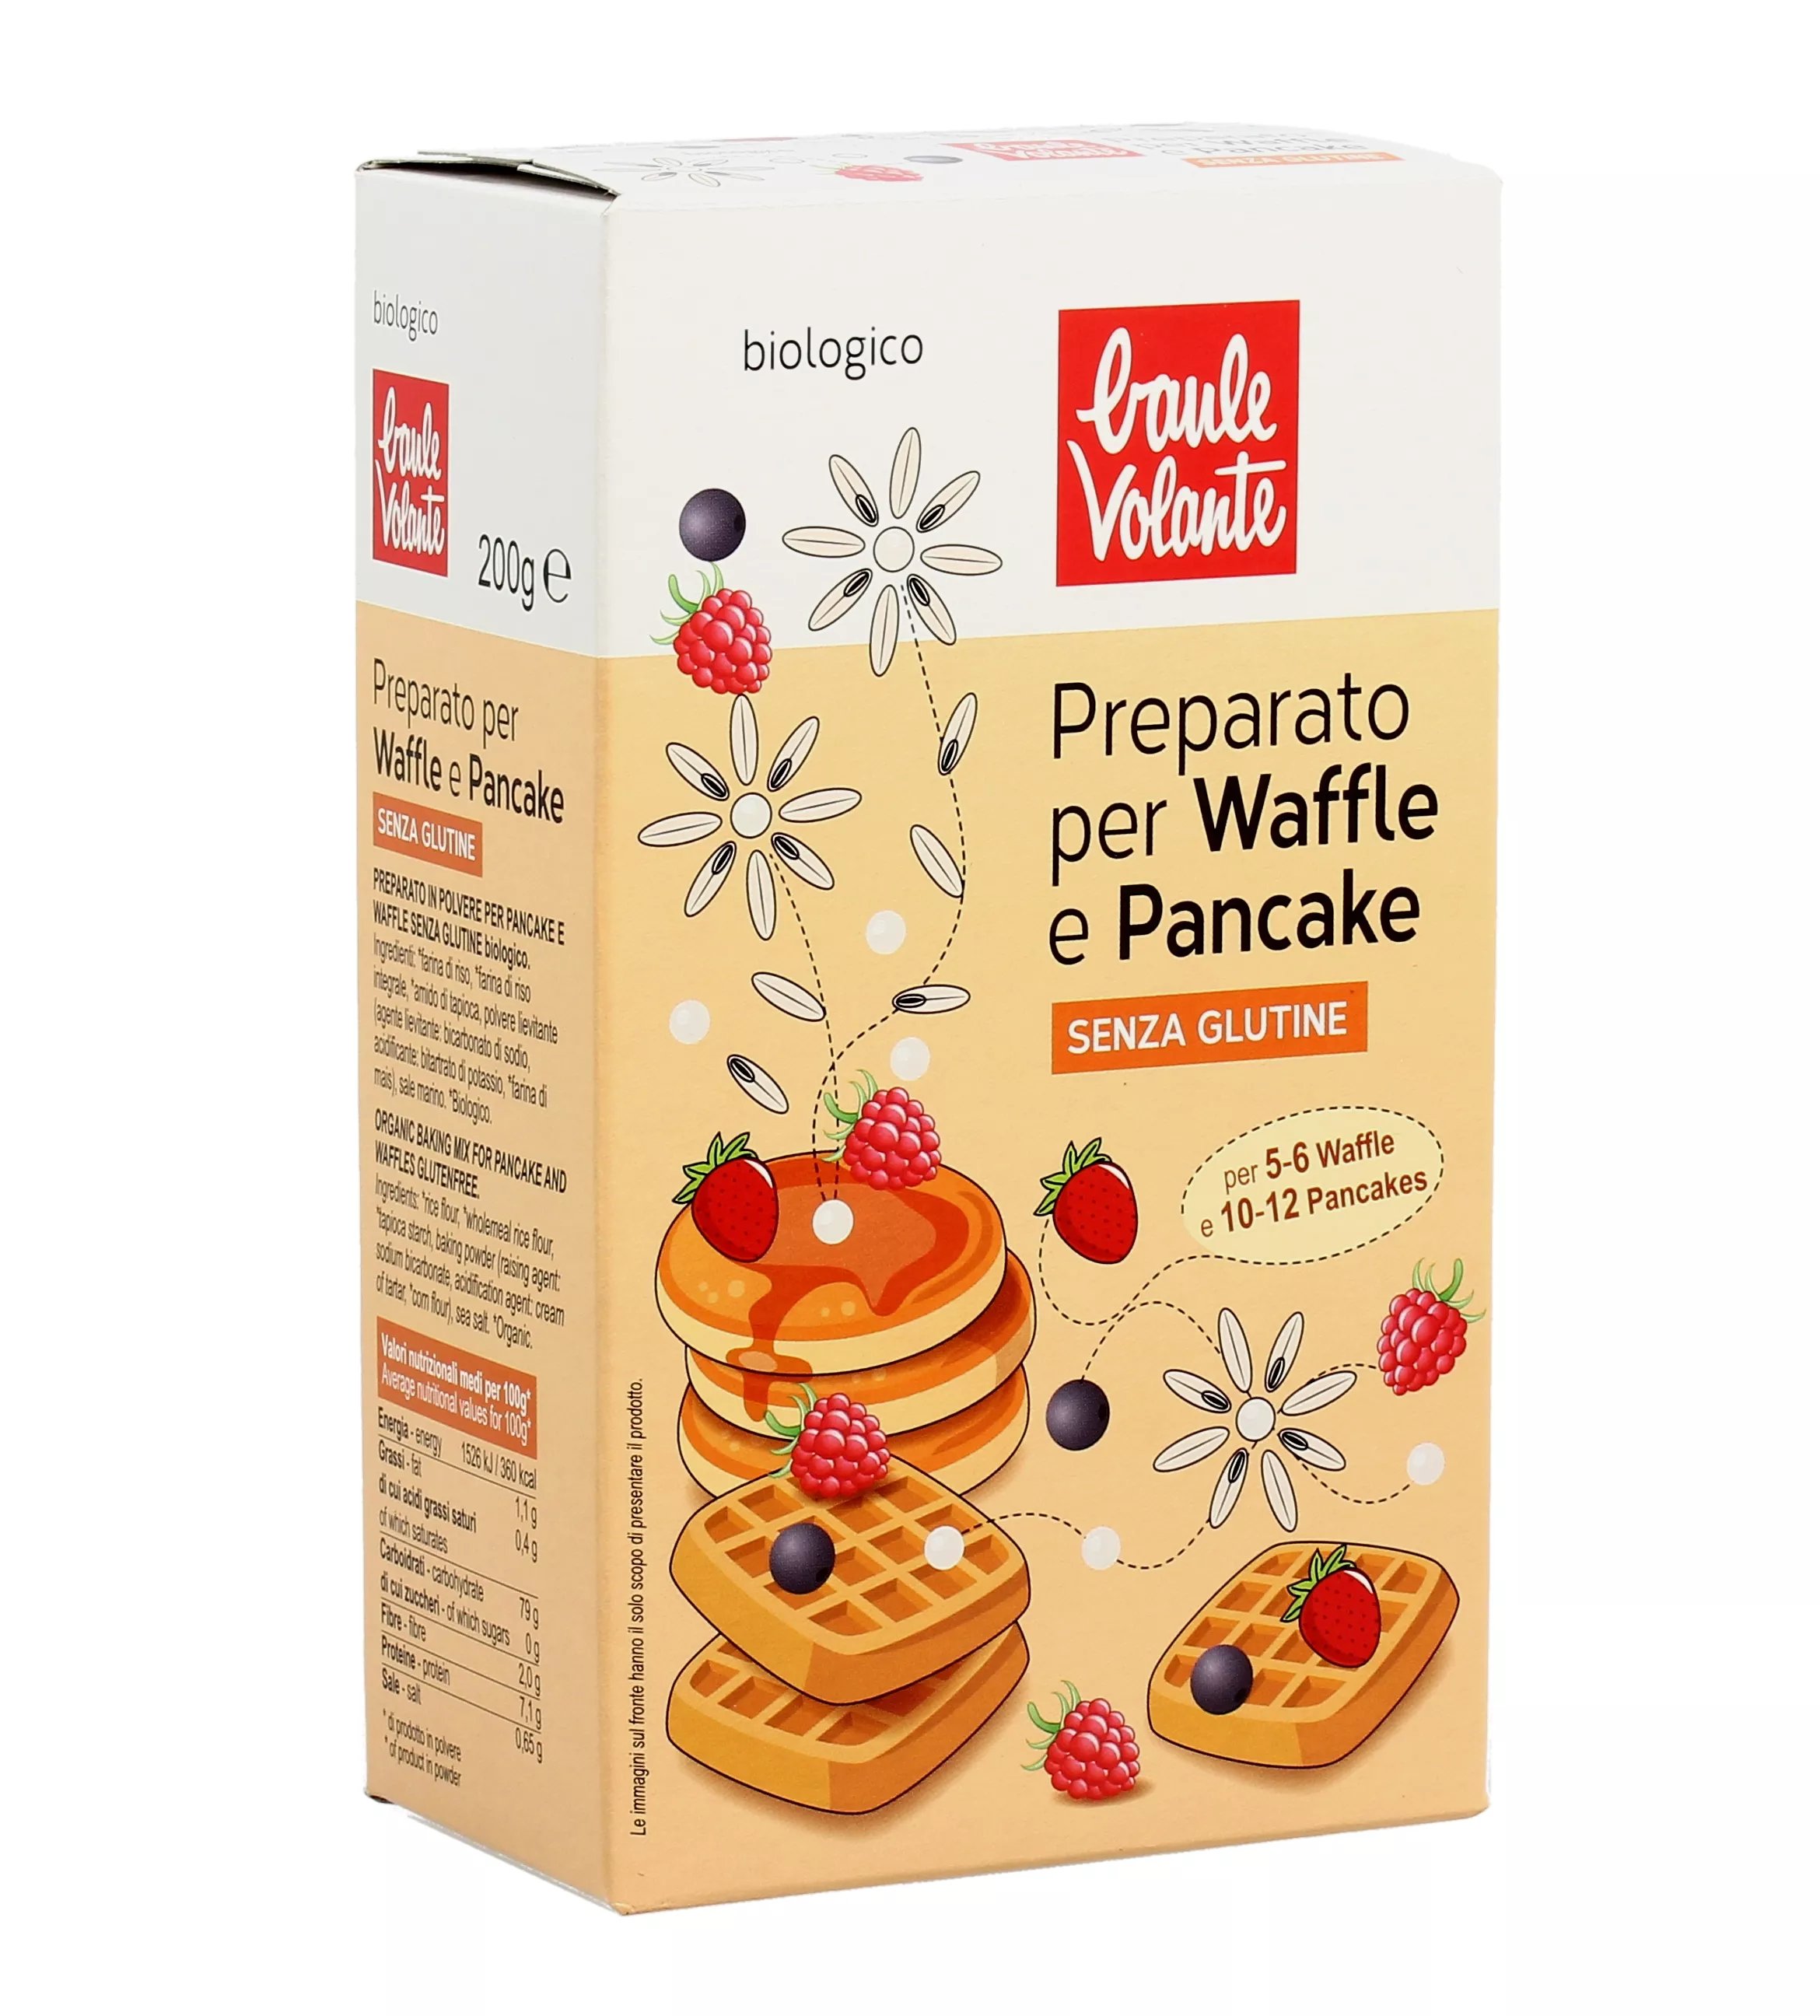 Preparato per Waffle e Pancake - Baule Volante